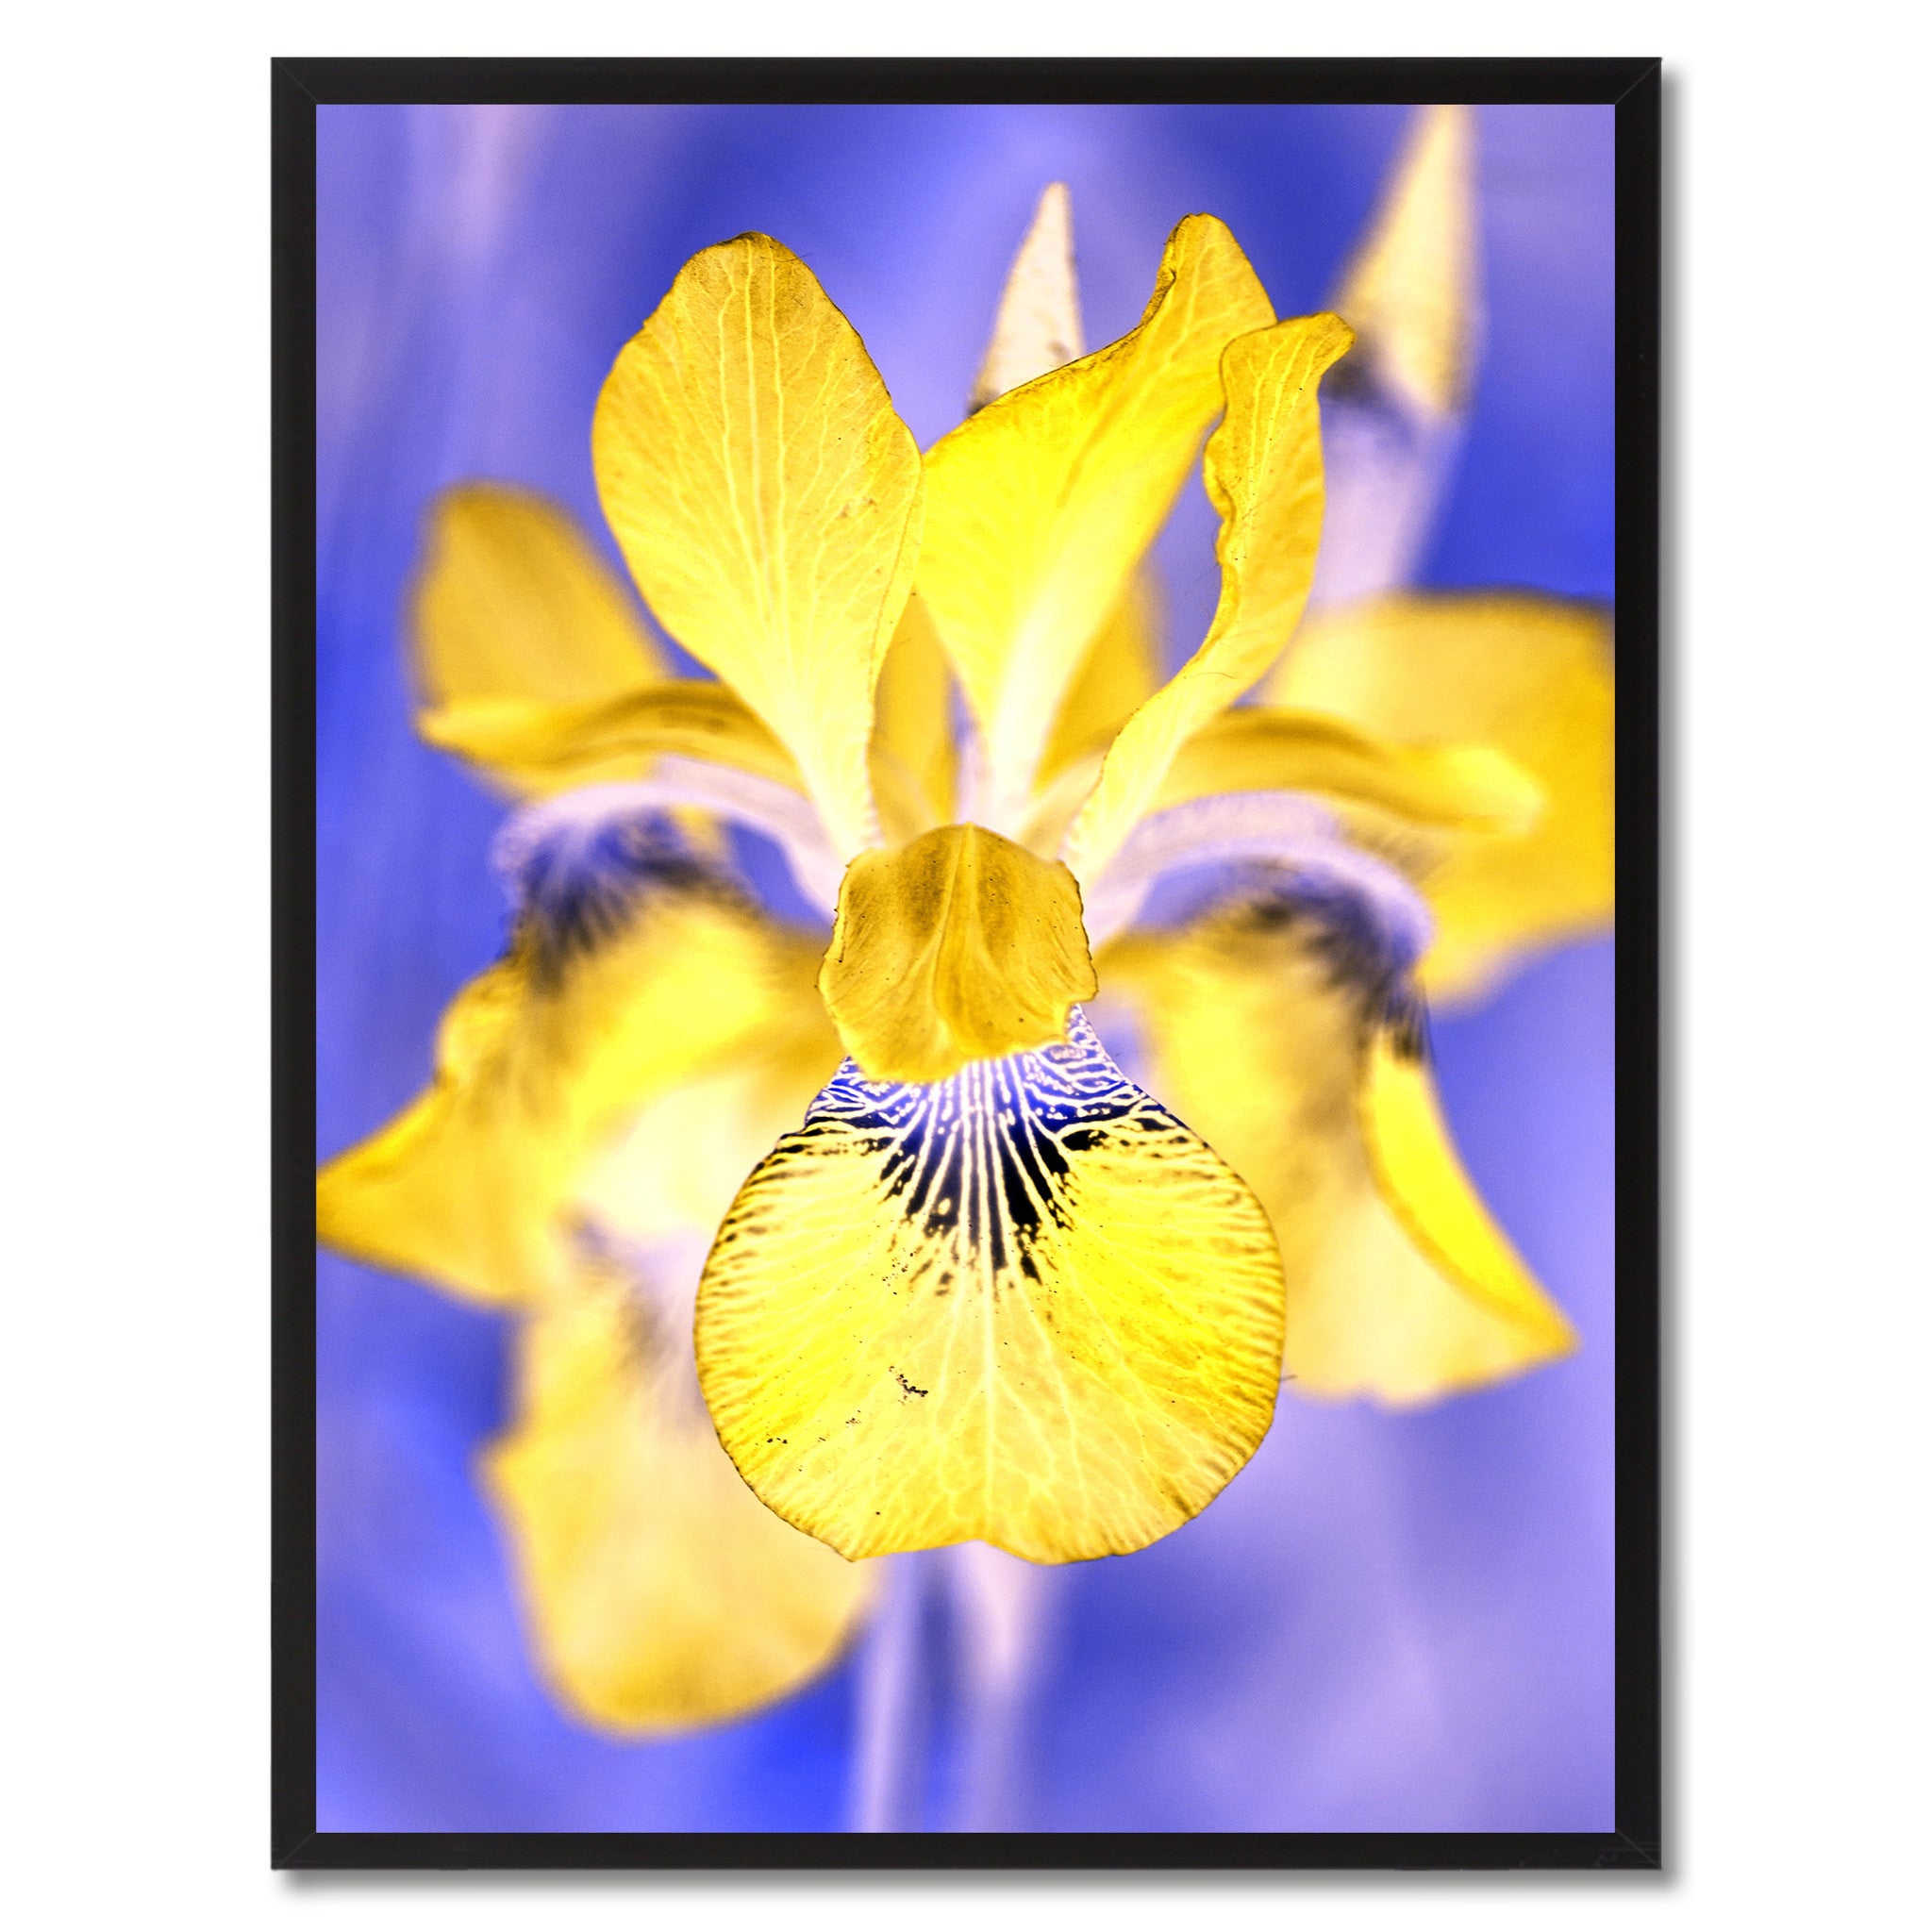 Yellow Iris Flower Framed Canvas Print Home Décor Wall Art